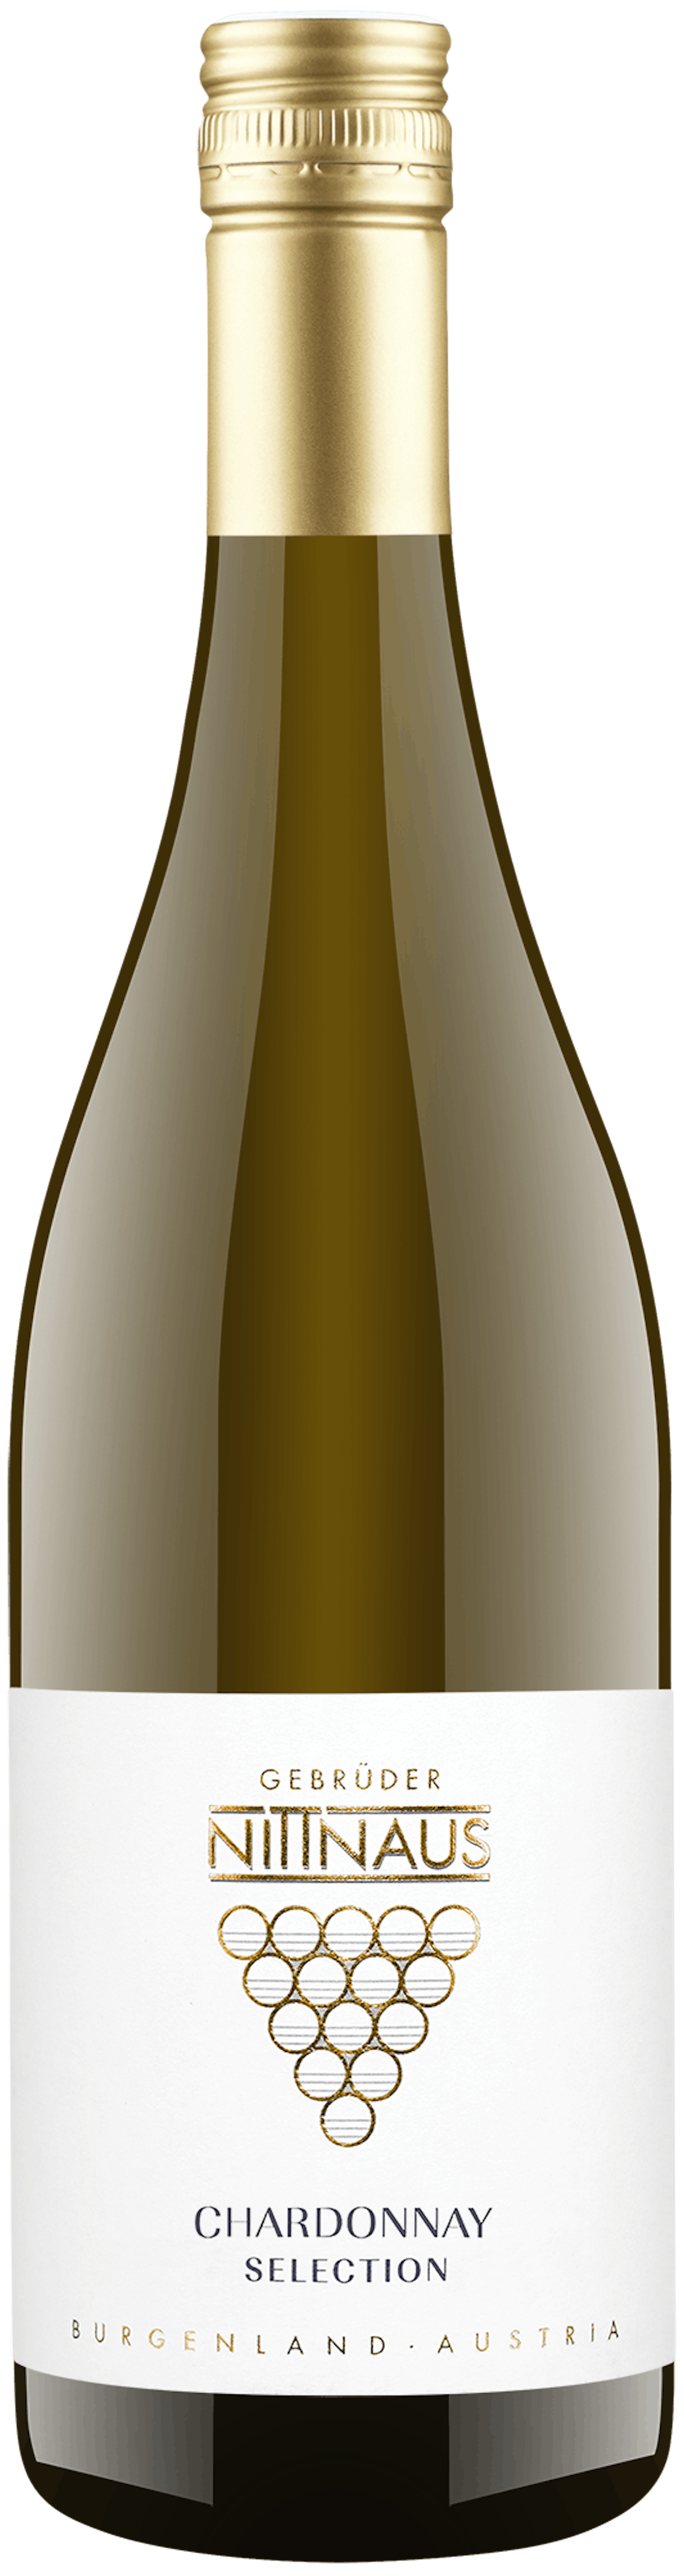 Chardonnay Selection